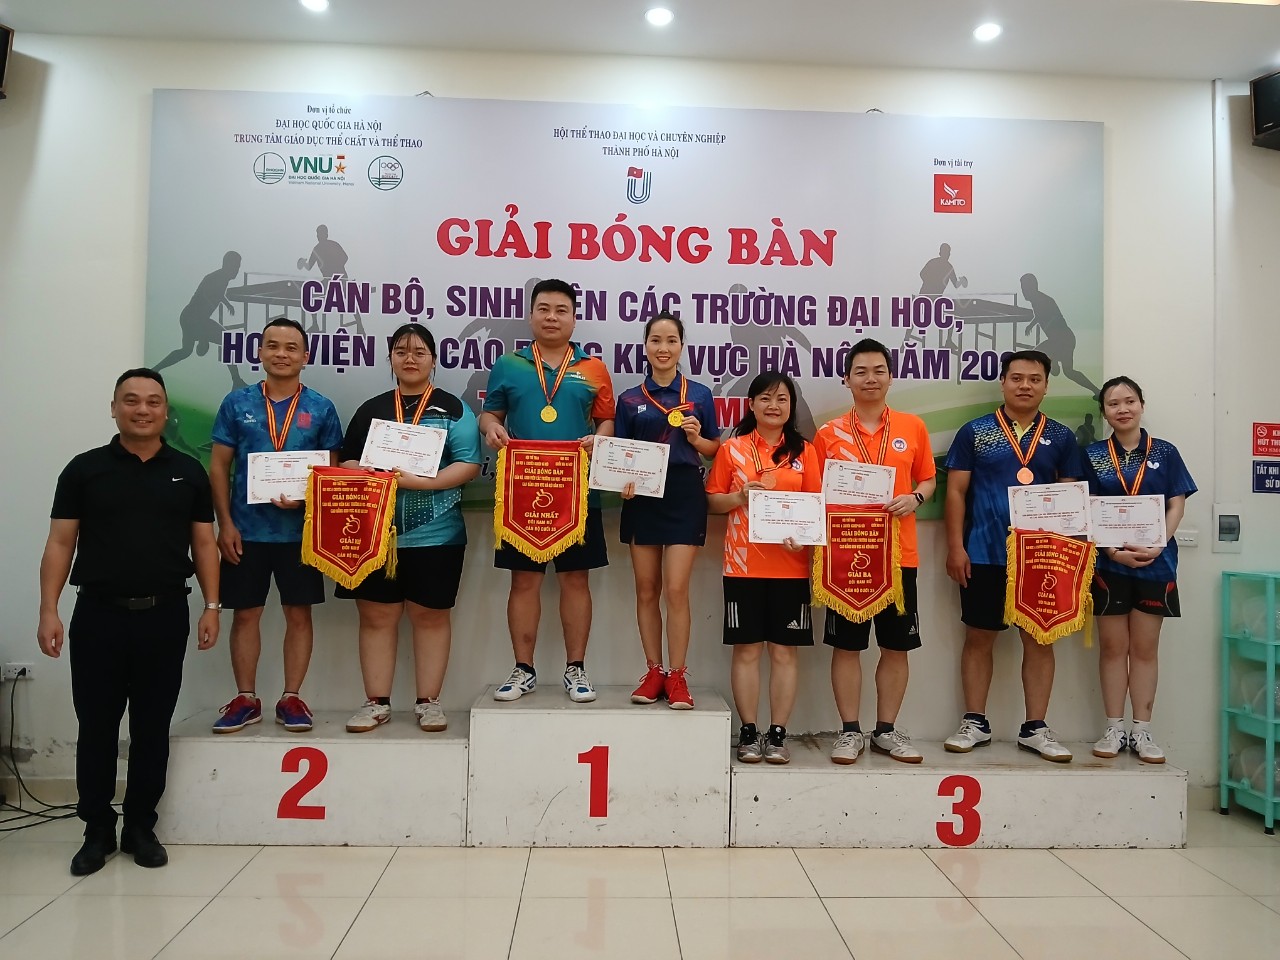 Trường Đại học Công nghiệp Hà Nội đạt thành tích cao tại giải bóng bàn cán bộ, sinh viên các trường đại học, học viện, cao đẳng khu vực Hà Nội năm 2024.